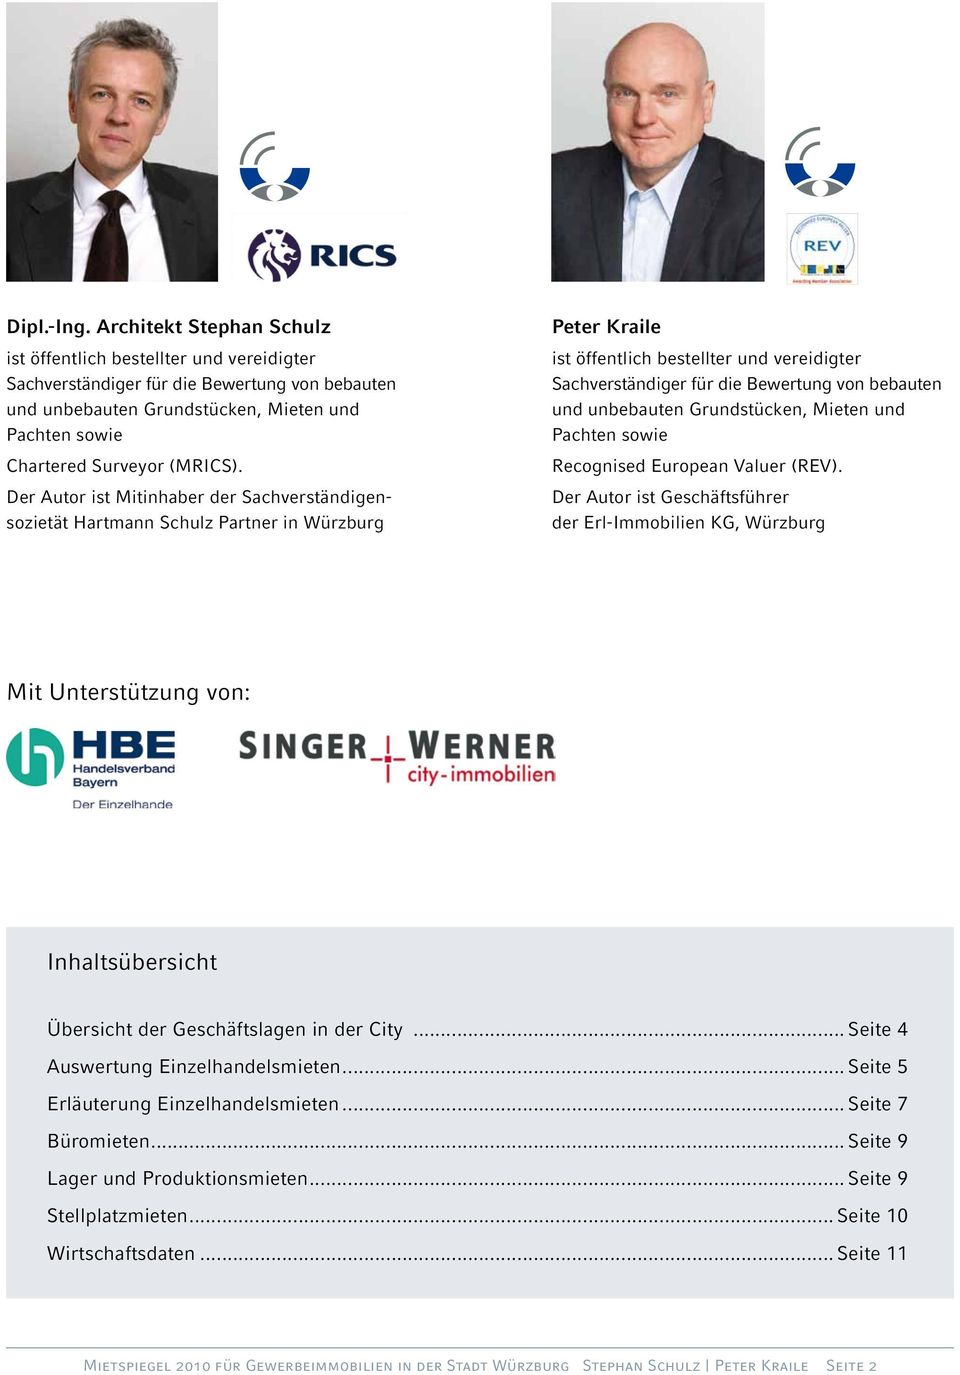 Der Autor ist Mitinhaber der Sachverständigensozietät Hartmann Schulz Partner in Würzburg Peter Kraile ist öffentlich bestellter und vereidigter Sachverständiger für die Bewertung von bebauten und